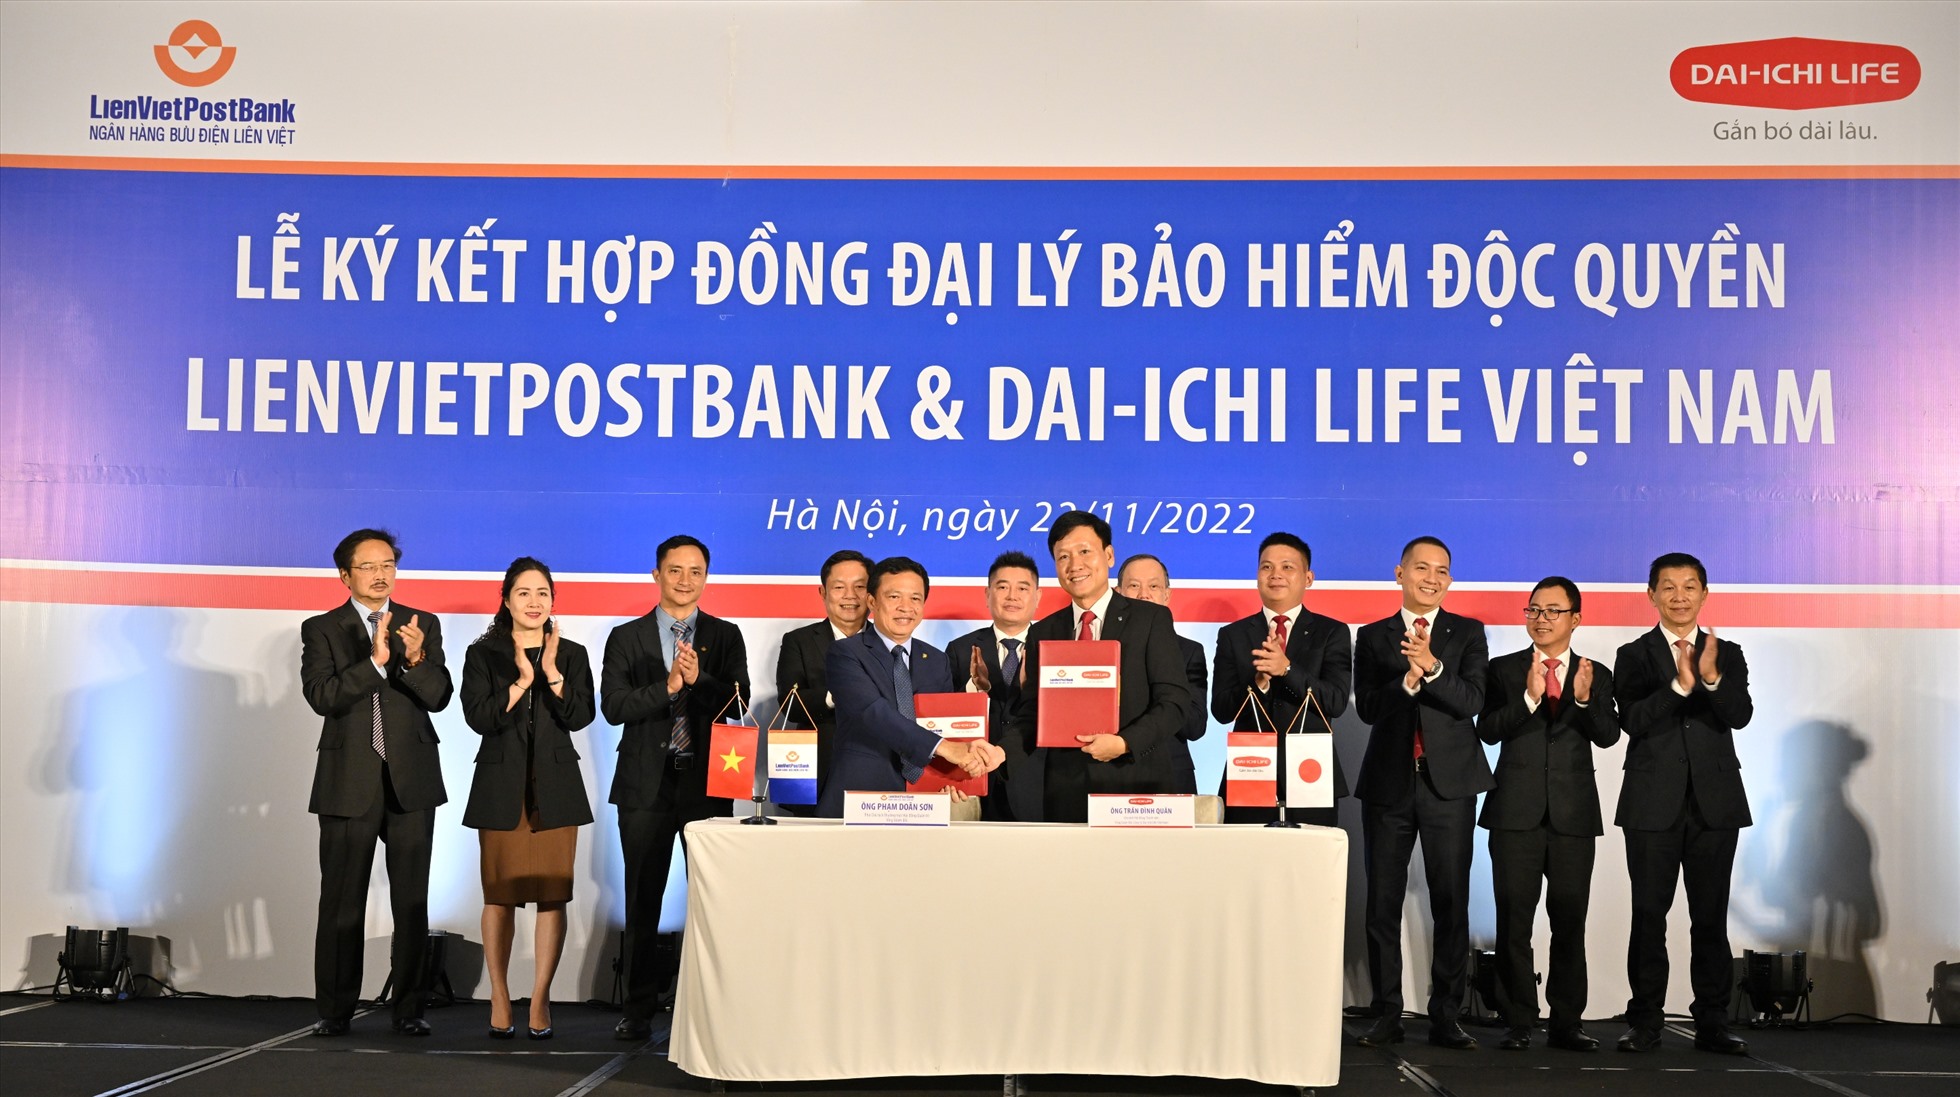 LienVietPostBank và Dai -ichi Life Việt Nam ký hợp đồng phân phối bảo hiểm độc quyền